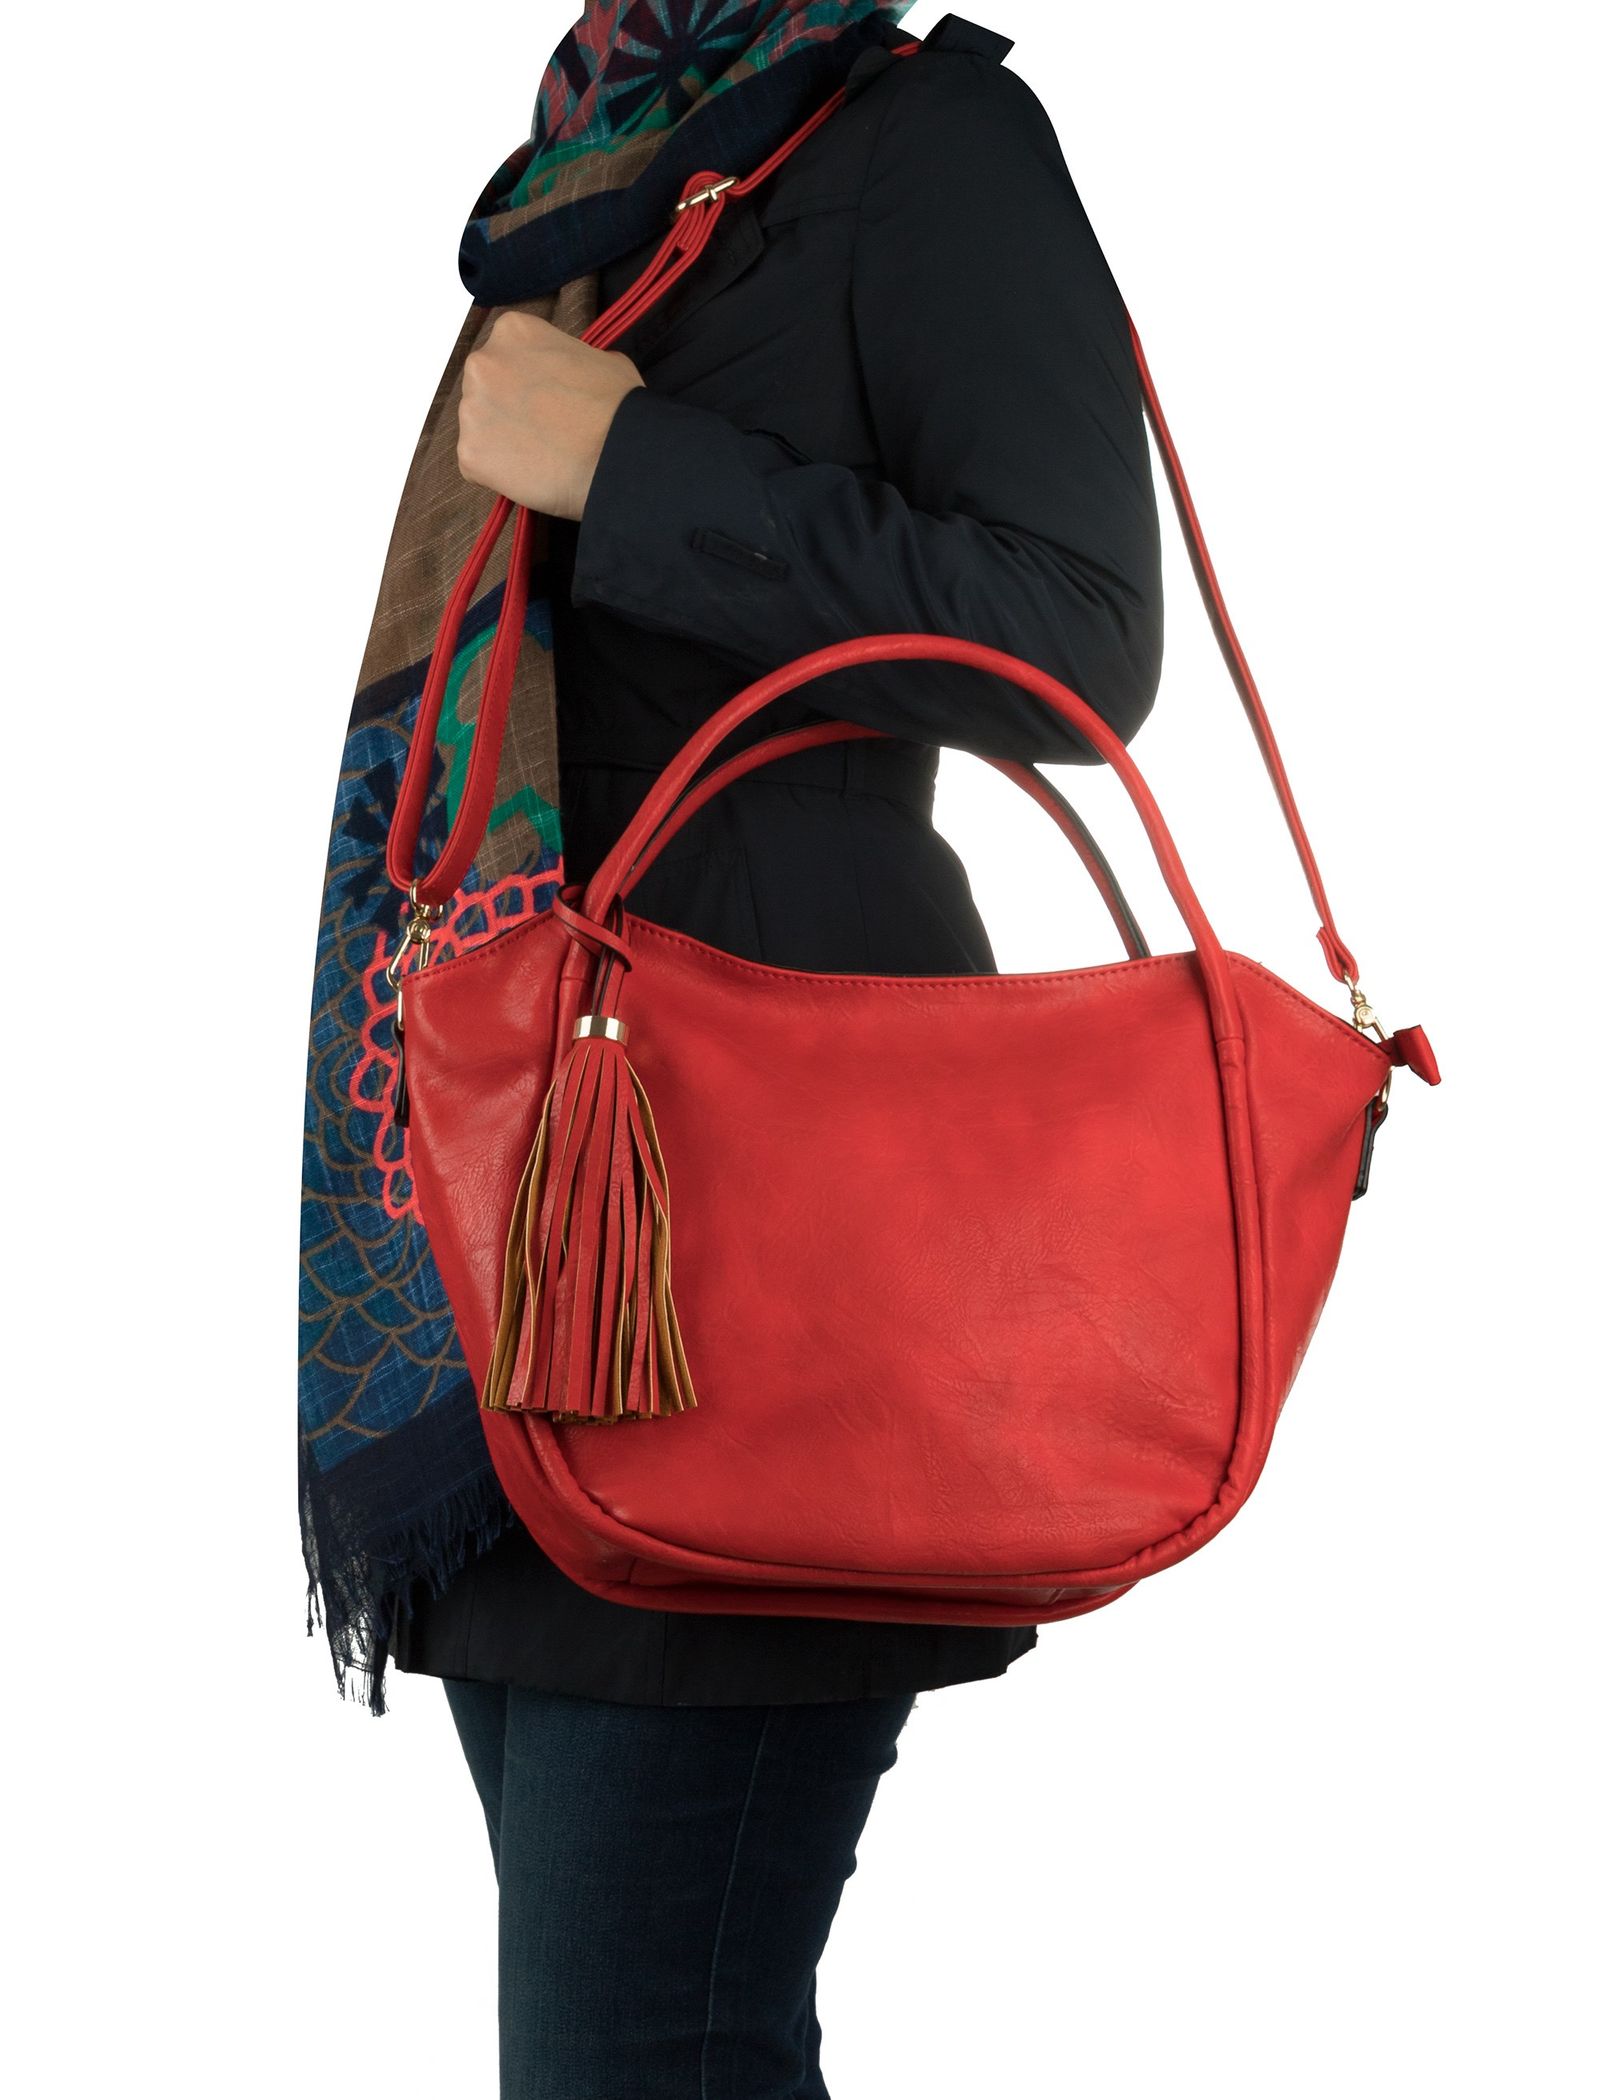 کیف دستی روزمره زنانه - دادلین تک سایز - قرمز  - 3